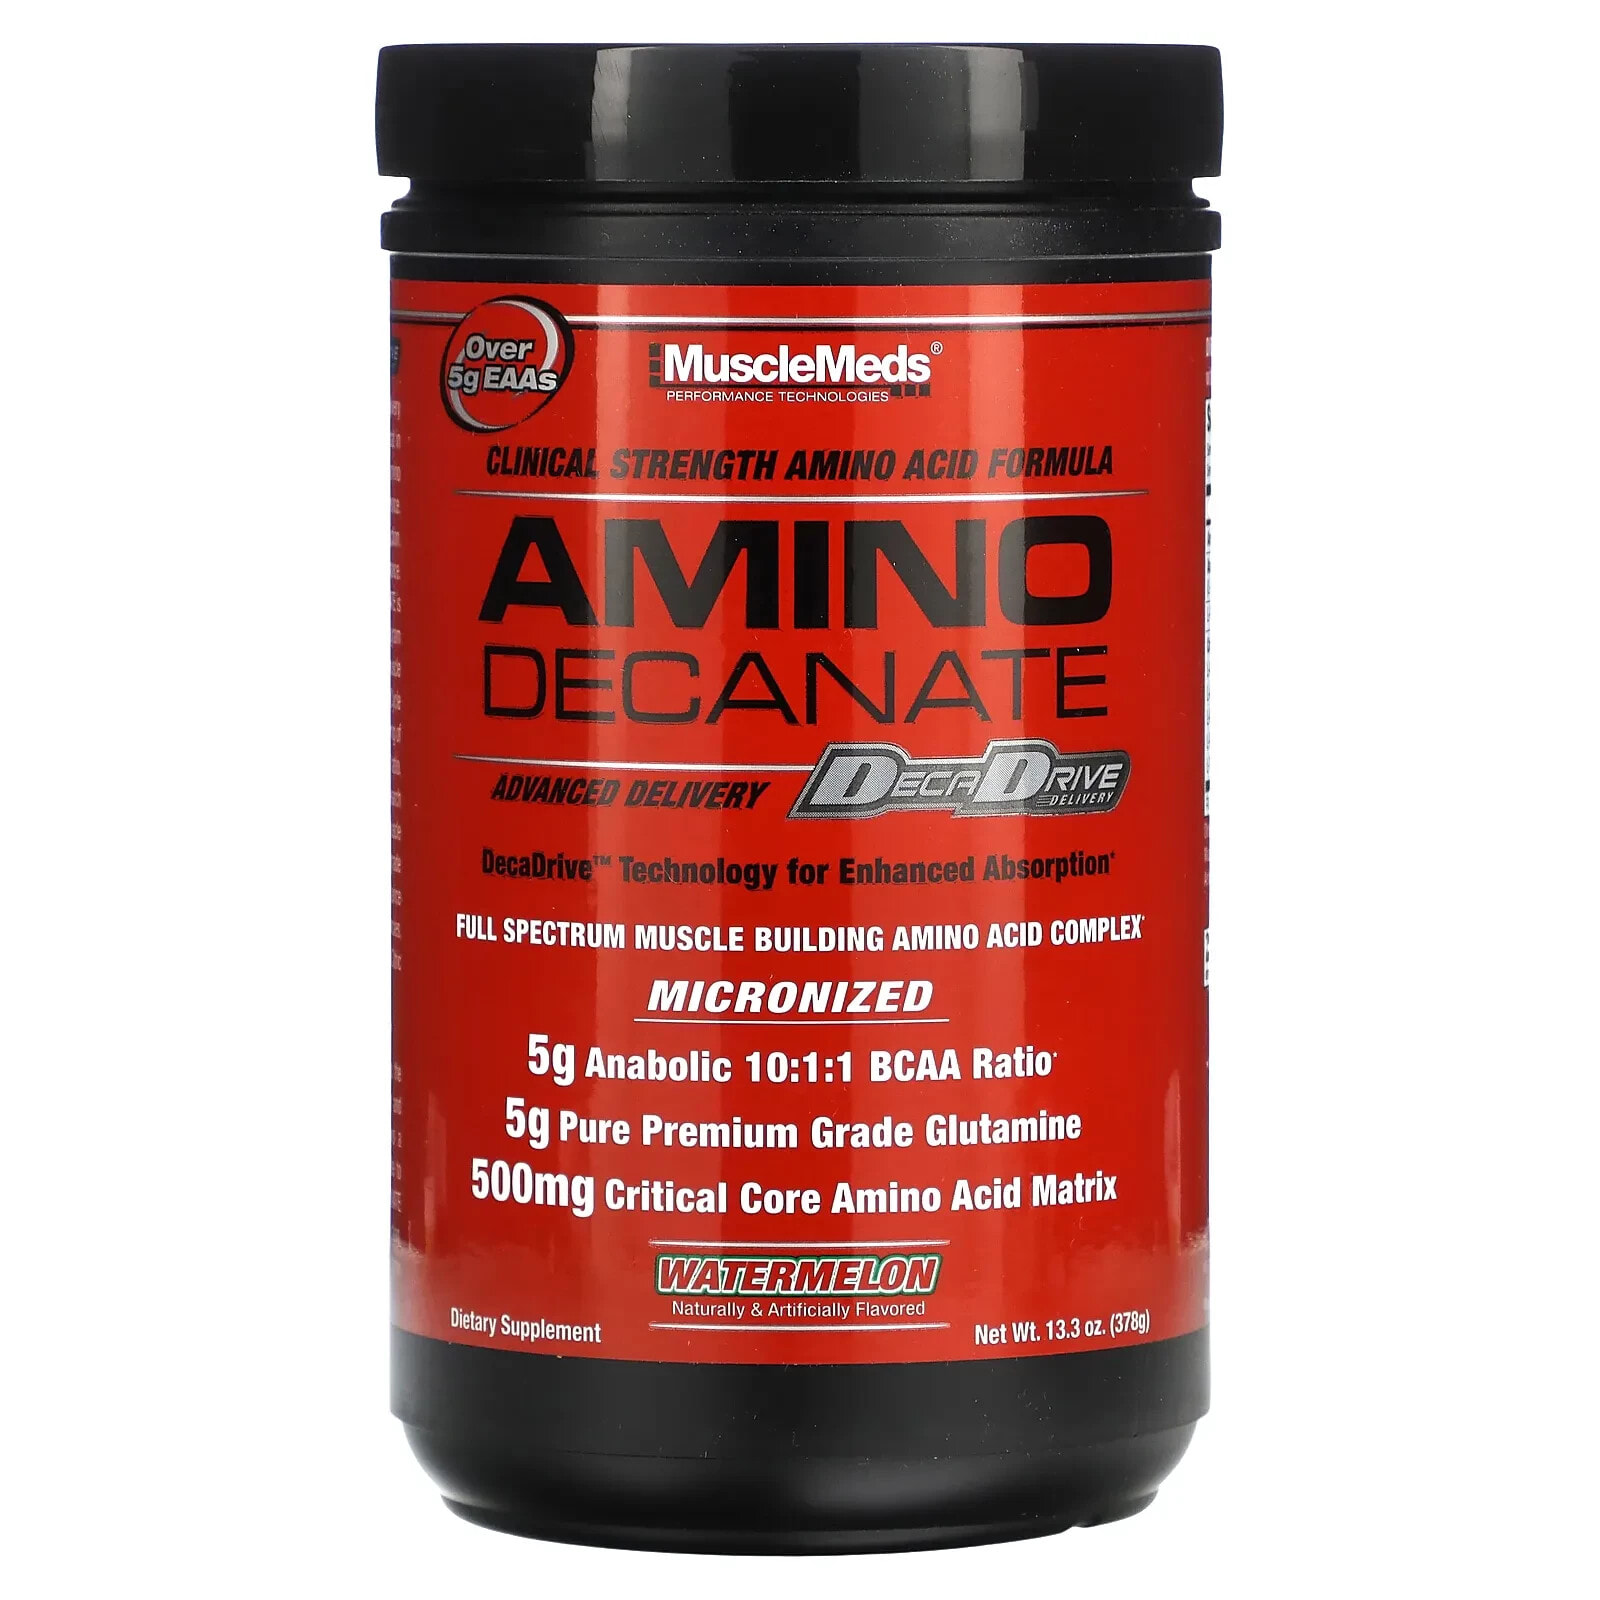 MuscleMeds, Amino Decanate Energy, Strawberry Kiwi, 13.96 oz (396 g)